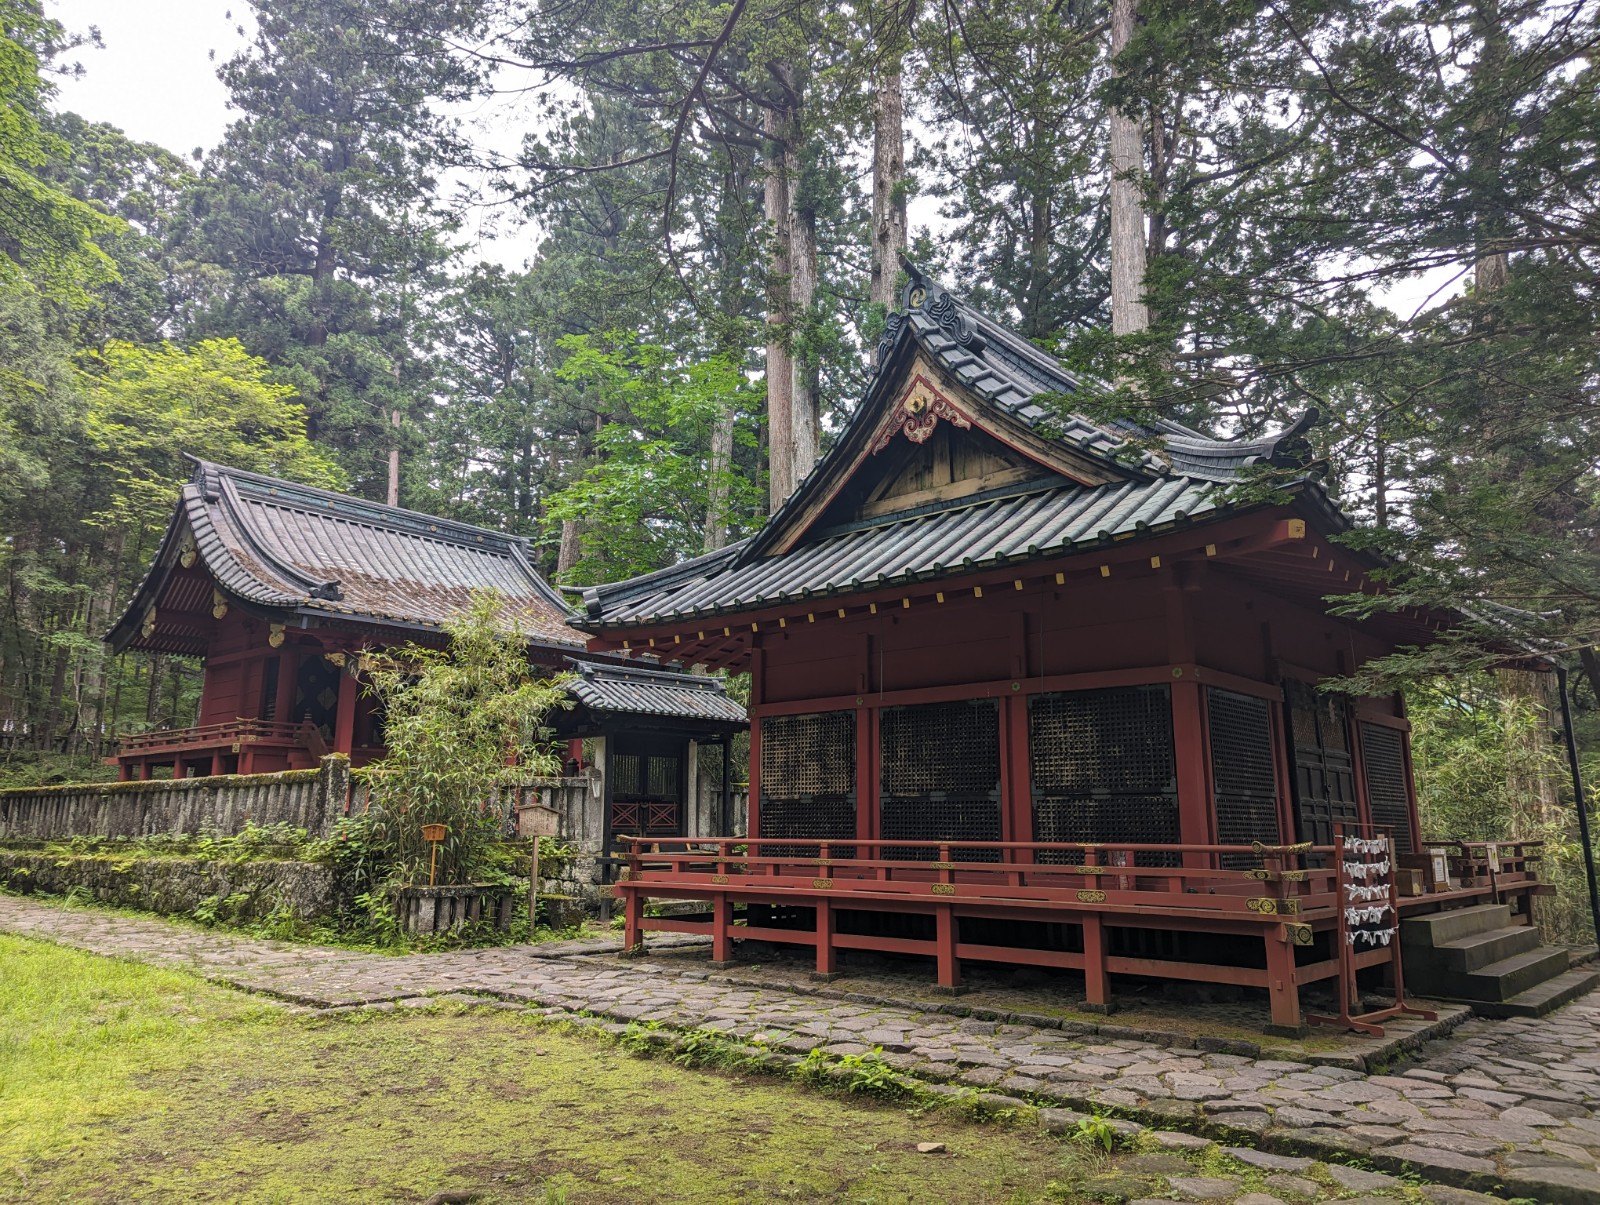 屋根が黒で全体が朱塗りの滝尾神社を写した写真